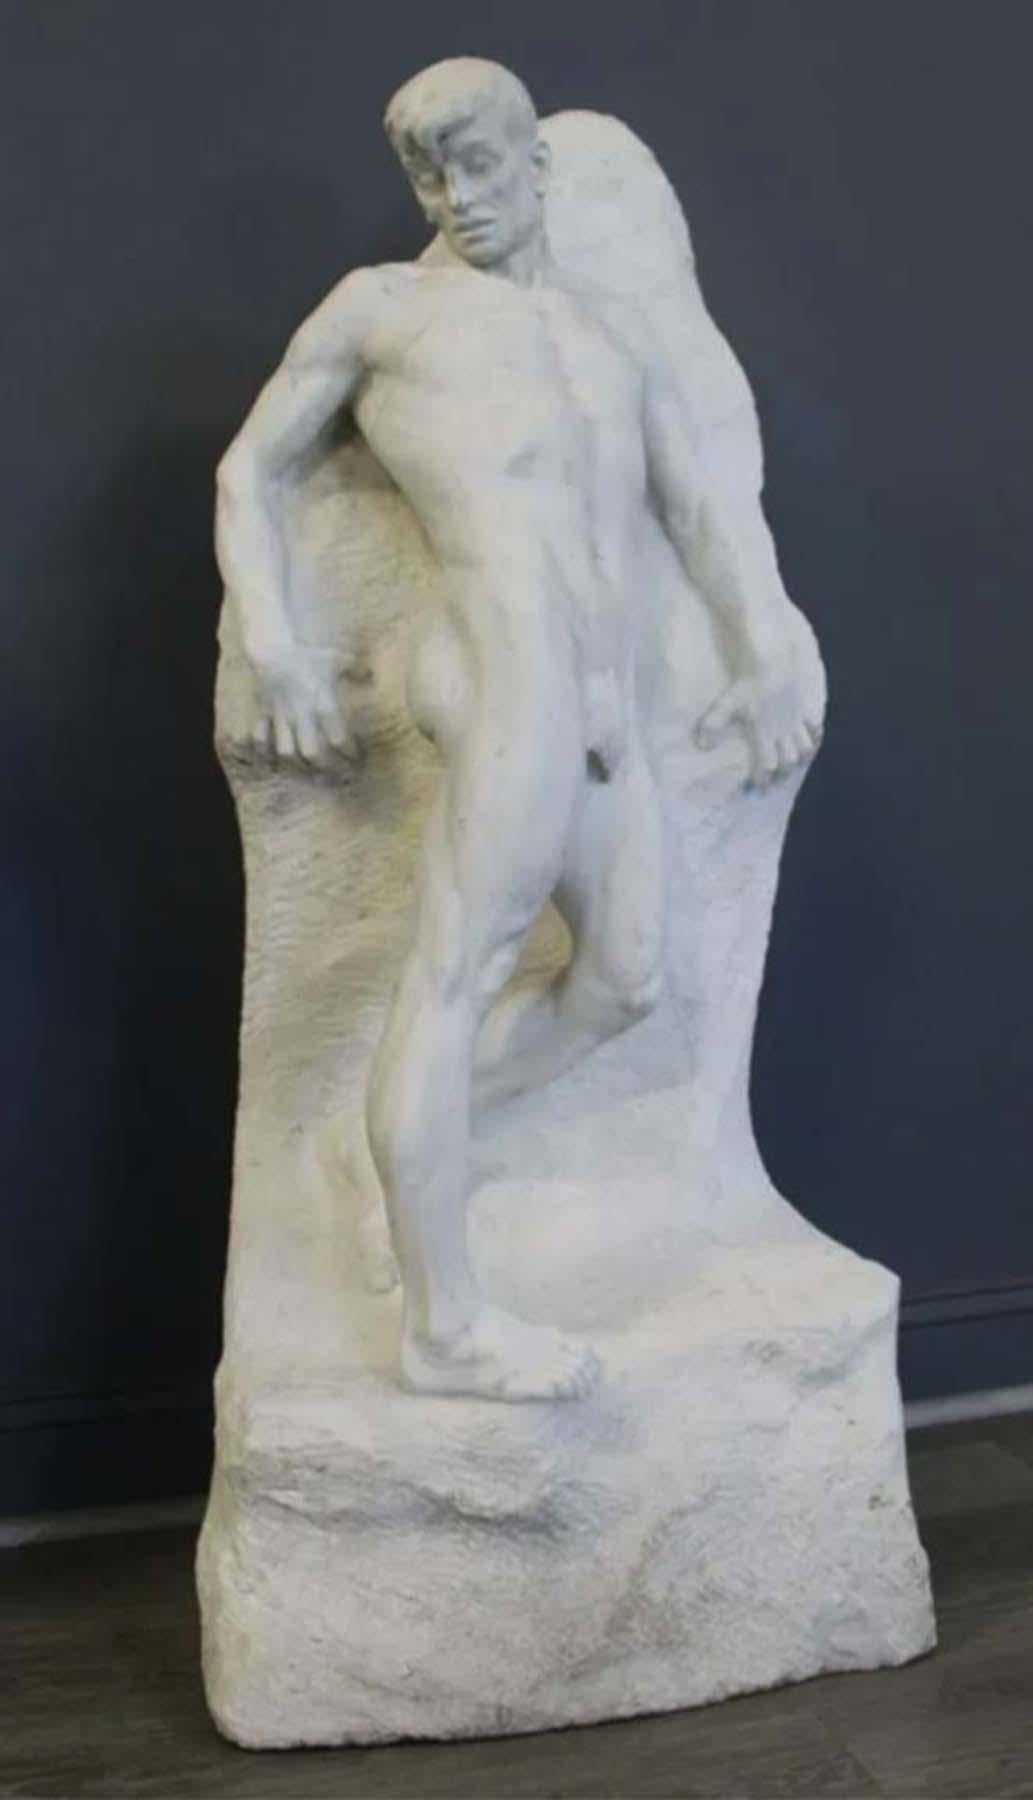 E. Garabaldi Nude Sculpture - L'ABISSO